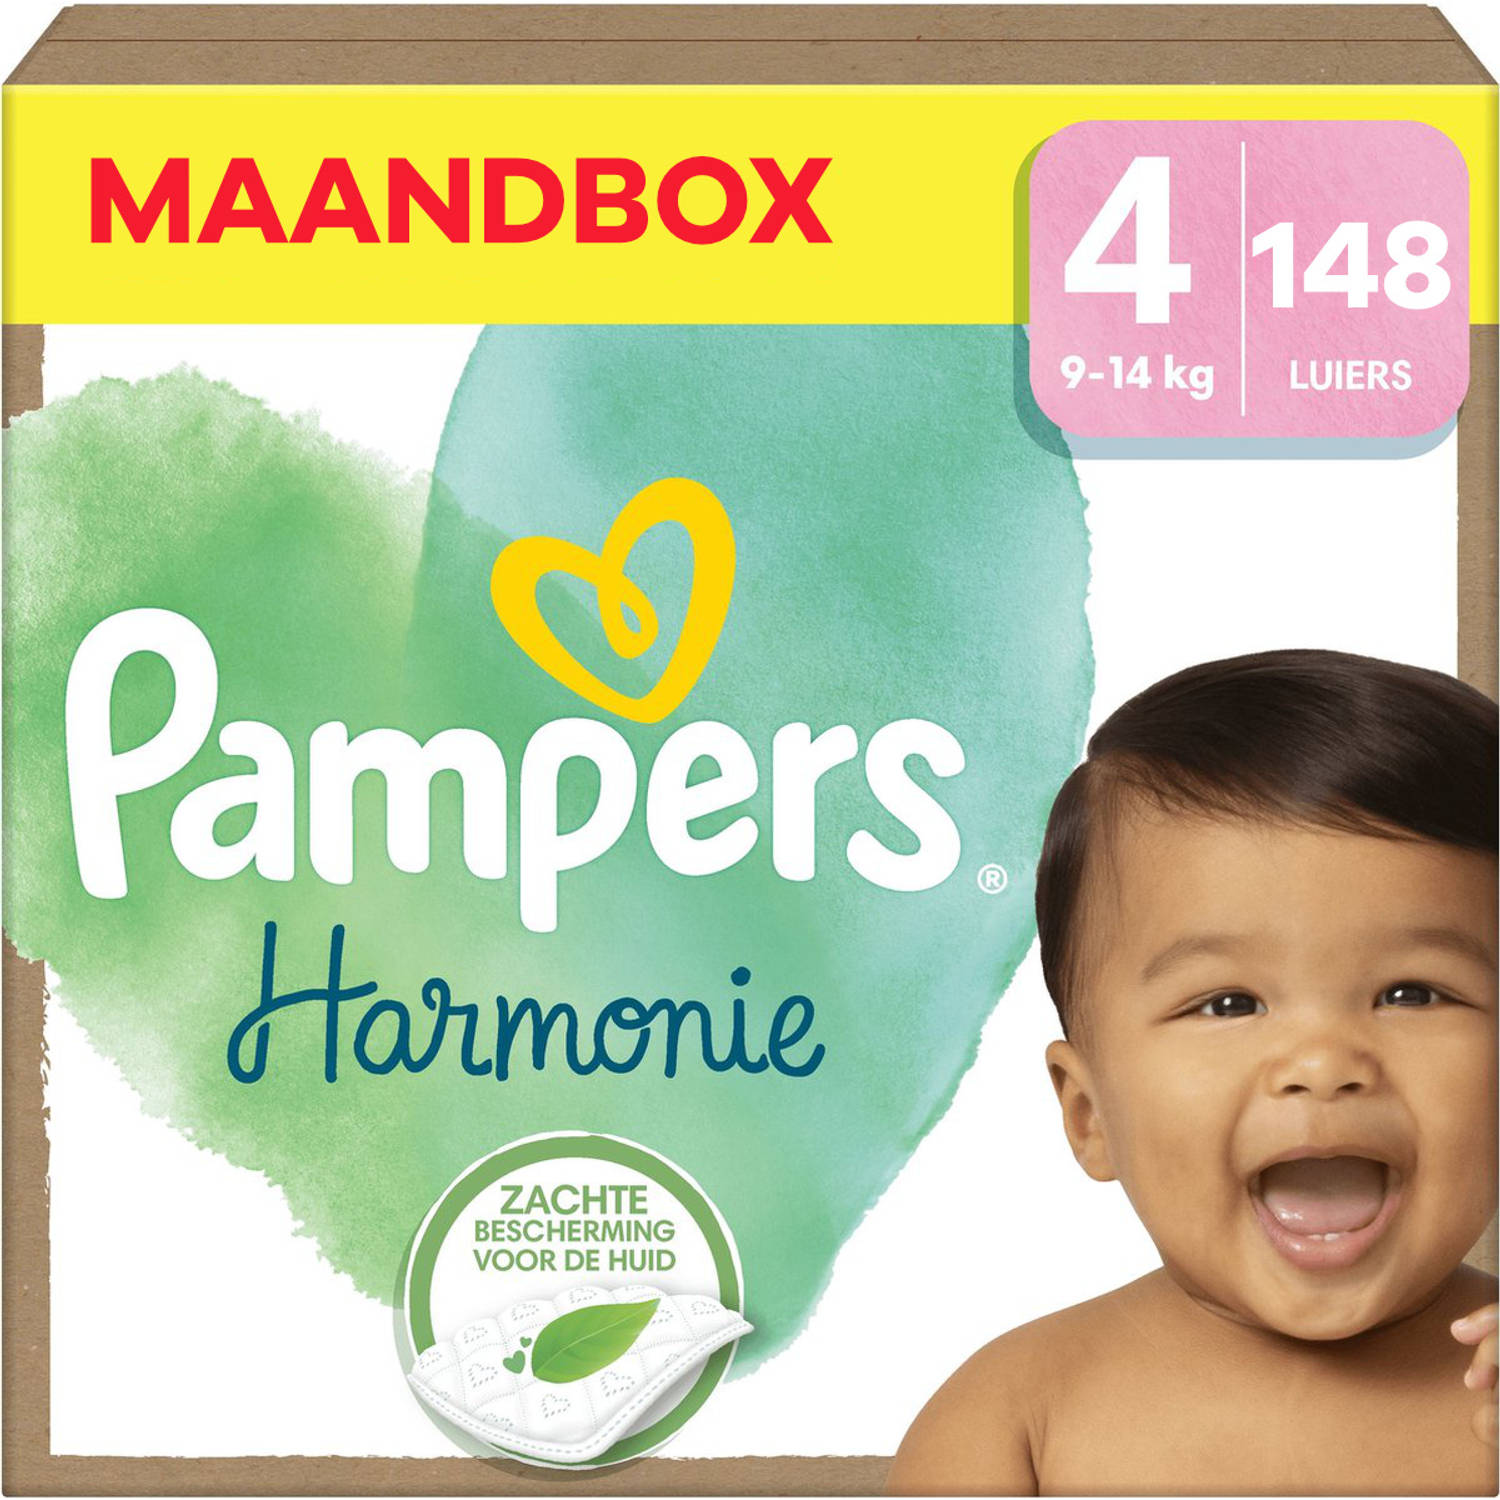 Pampers Harmonie Maat 4 Maandbox 148 stuks 9-14 KG